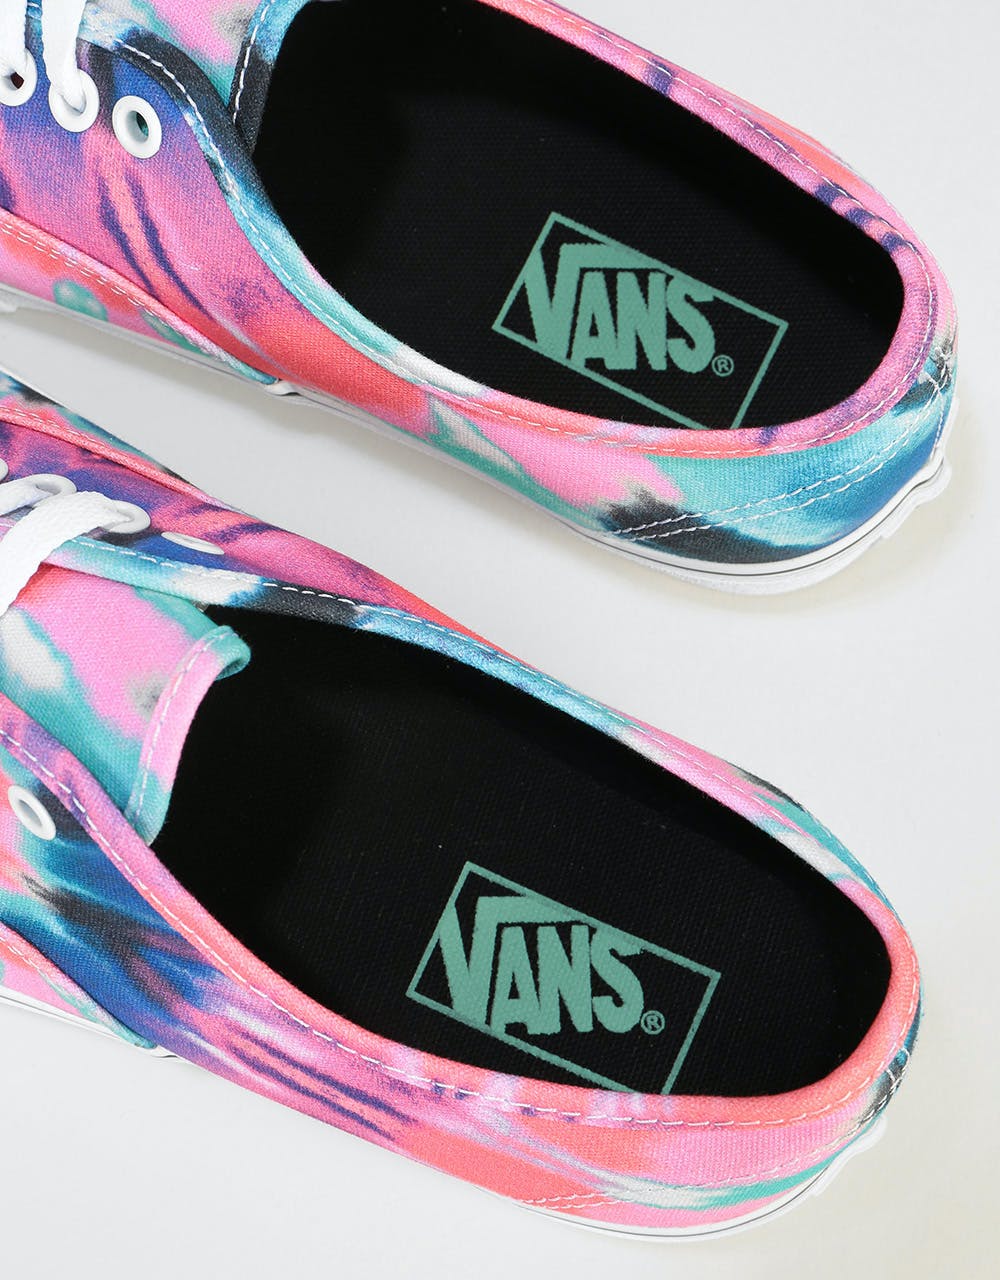 Vans Authentic Skate Shoes - (Tie Dye) Multi/True White